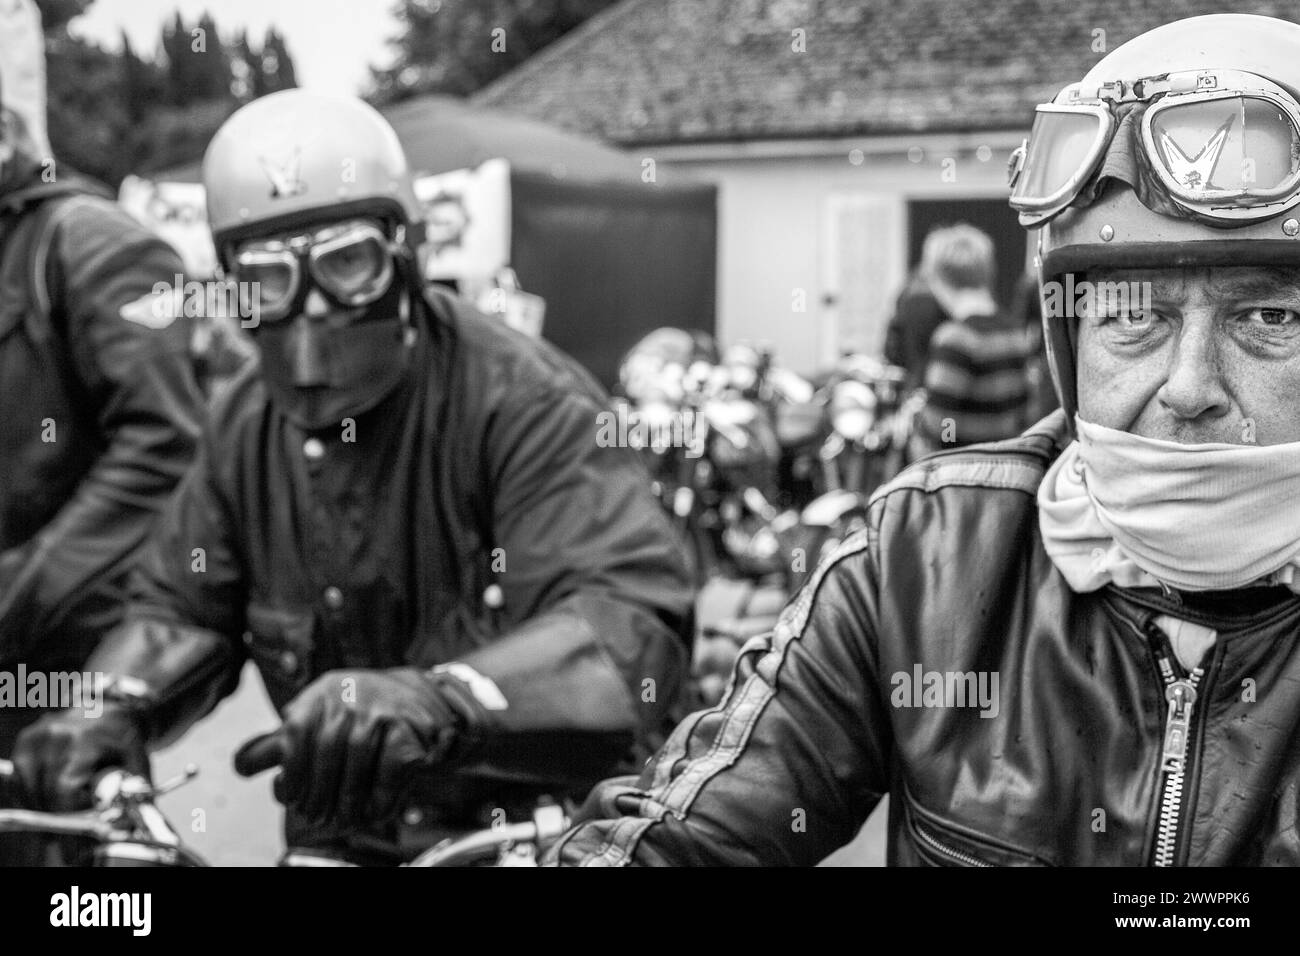 due motociclisti motociclisti seduti su moto con casco retrò e occhiali di protezione. Foto Stock